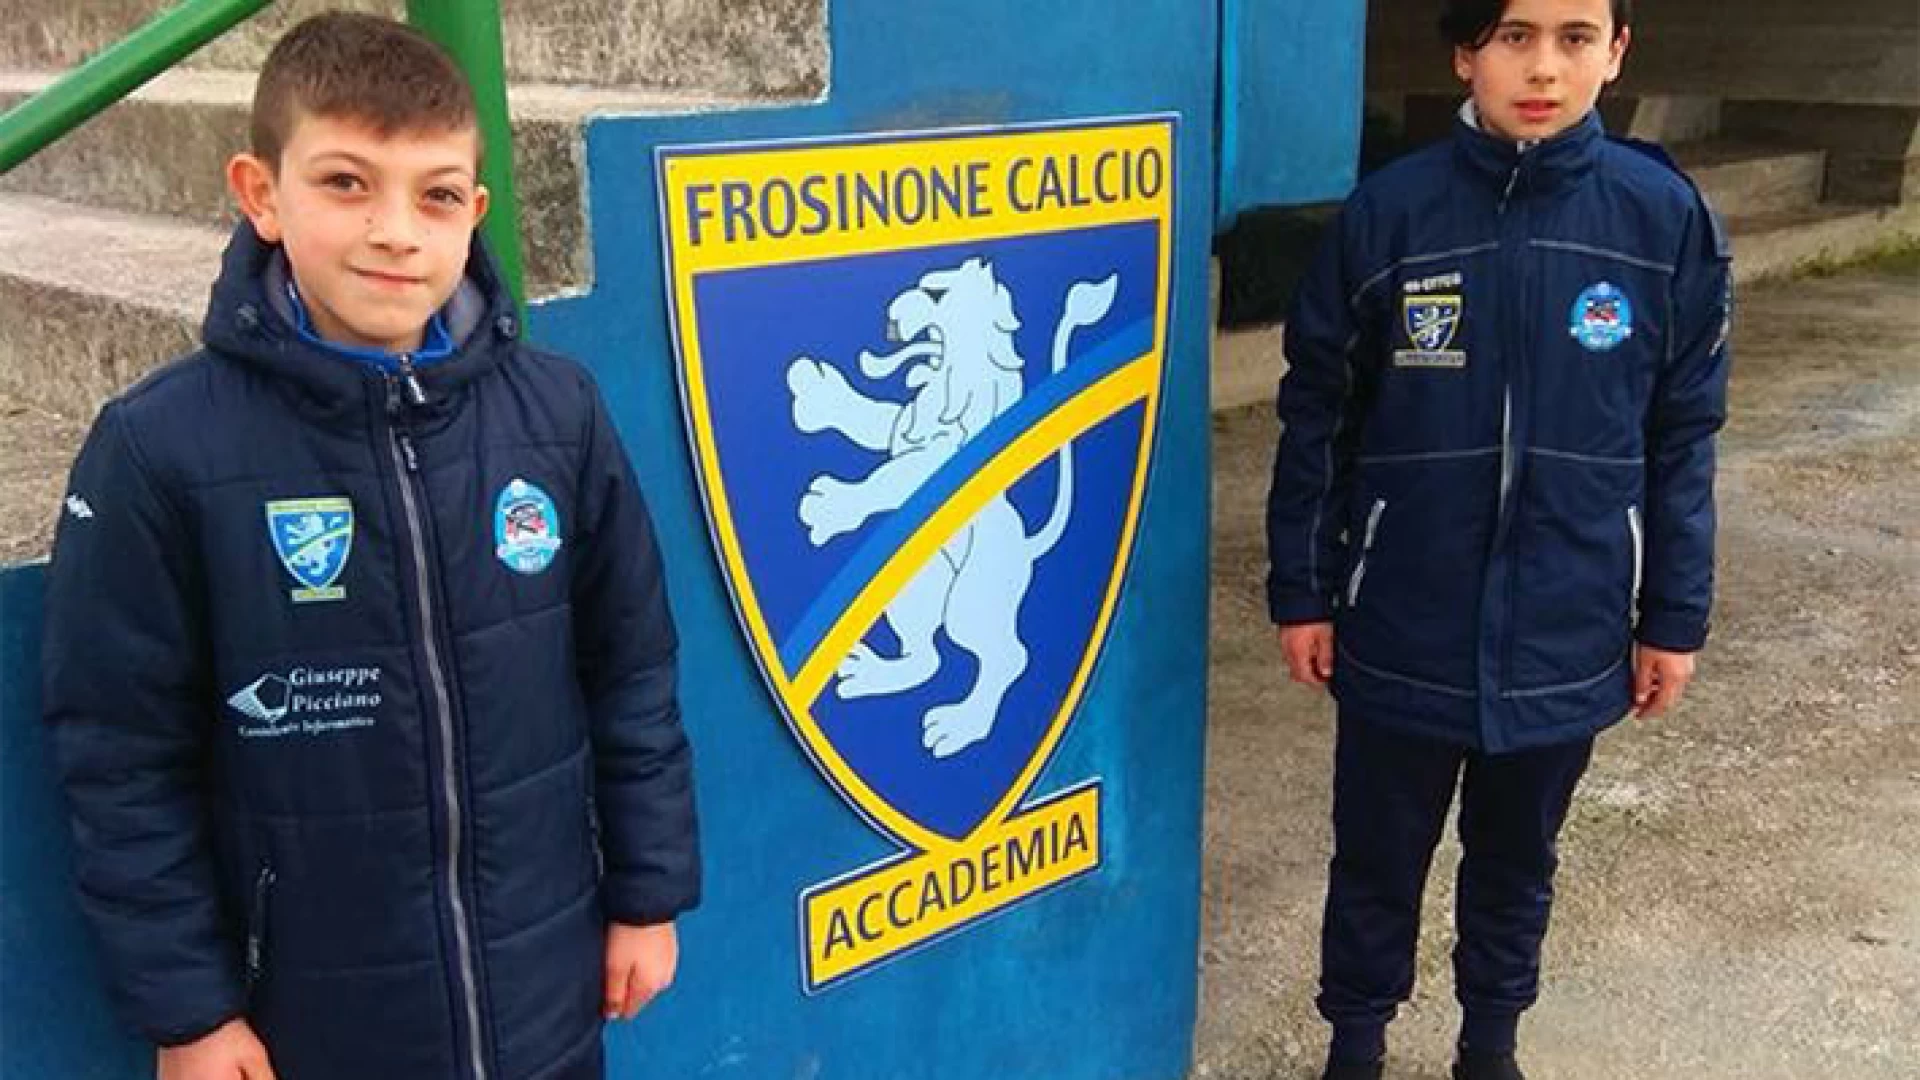 Calcio Giovanile: progetto rappresentative Frosinone Calcio. Due esordienti della Boys prenderanno parte ad un torneo riservato ai gruppi 2006-2007.